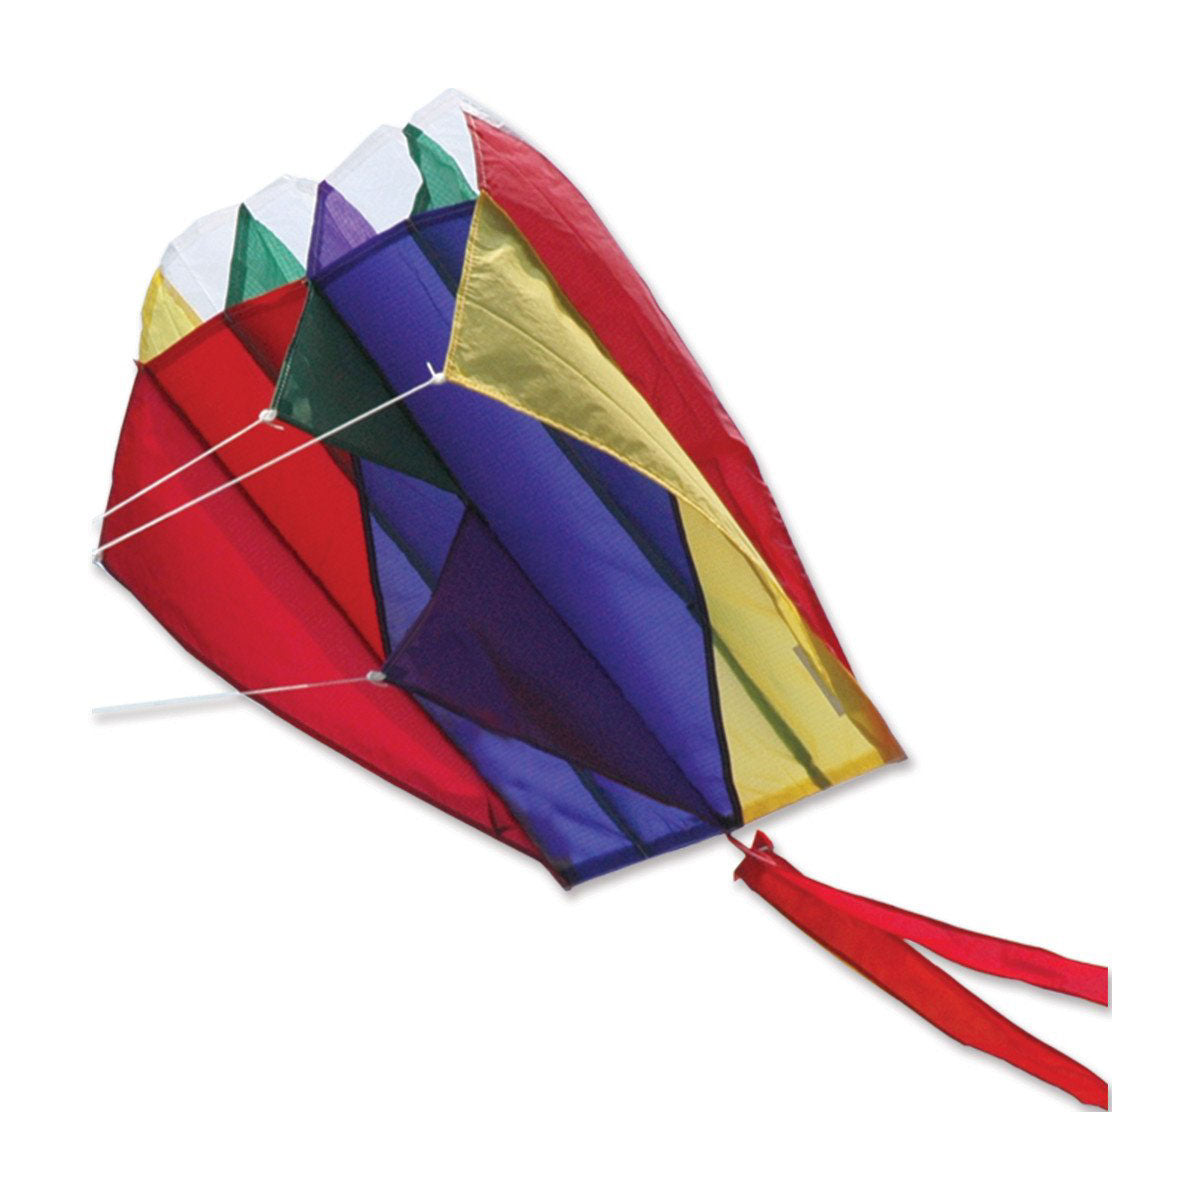 Rainbow Stripes  Parafoil 2 Kite from Premier Kites